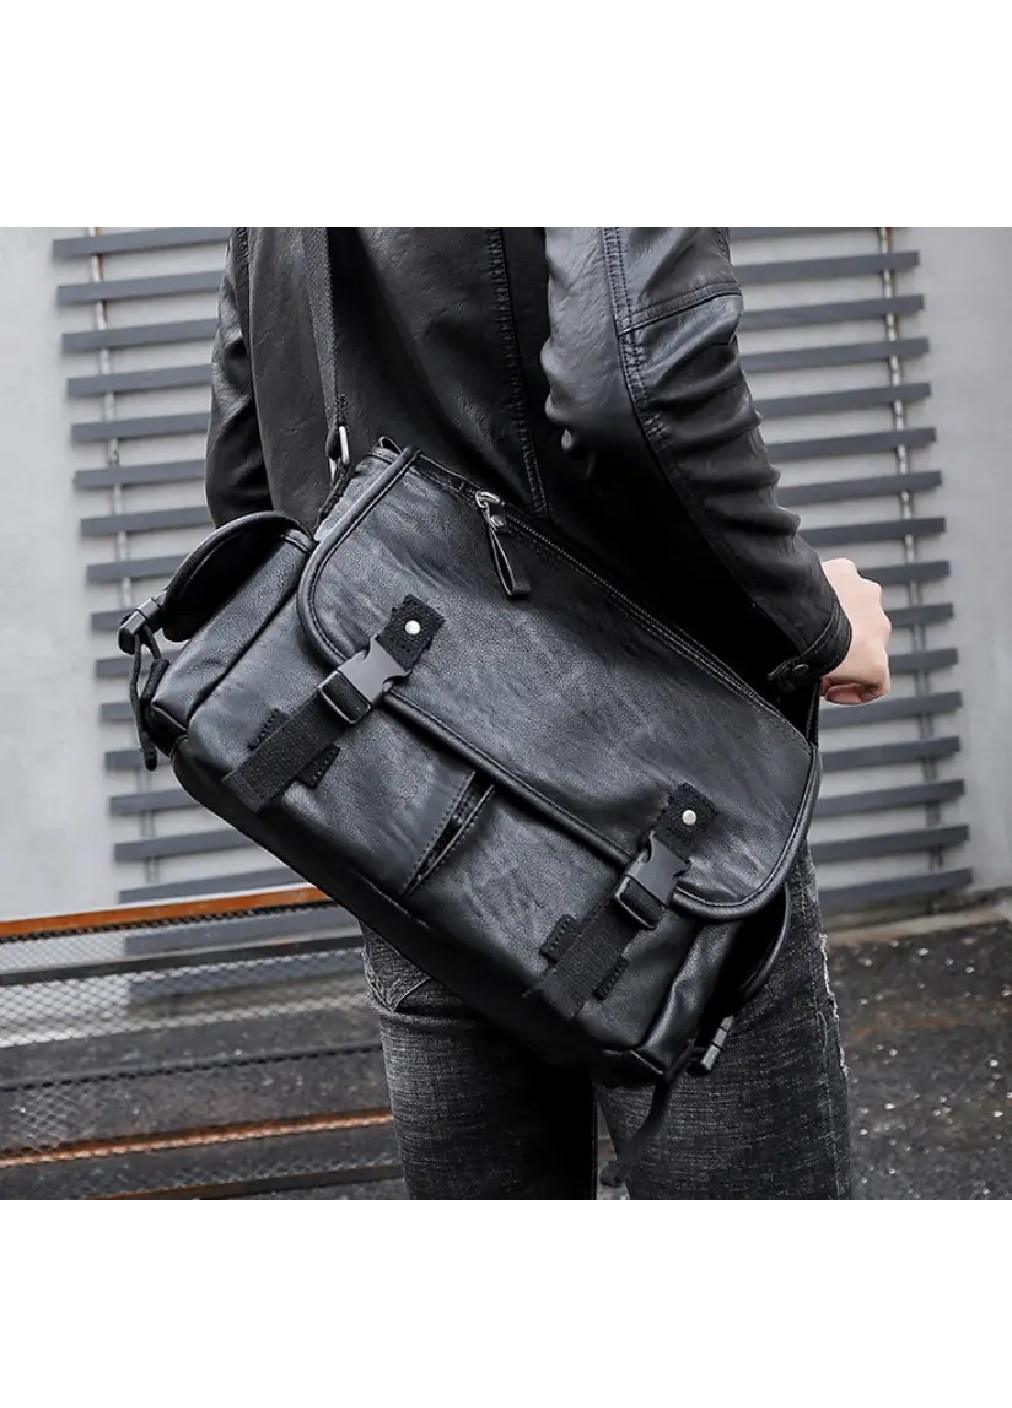 Чоловіча стильна практична компактна повсякденна сумка на плече з екошкіри 32х25х9 см (475520-Prob) Чорна Unbranded (268463130)